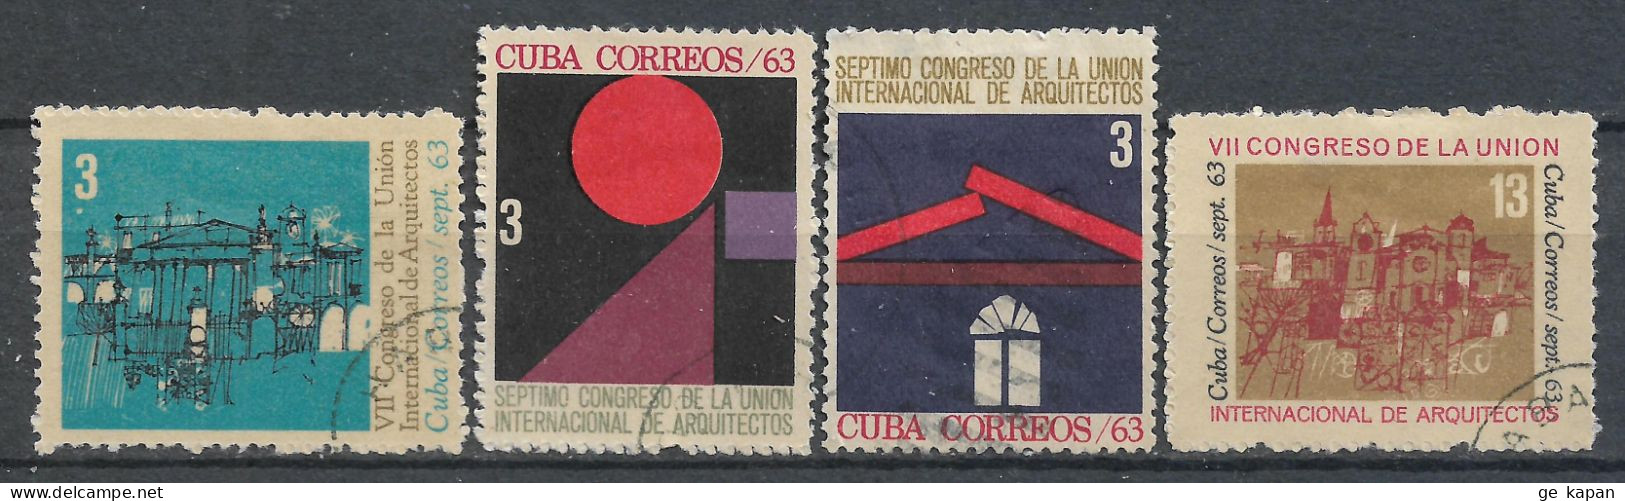 1963 CUBA SET OF 4 USED STAMPS (Michel # 864,865,867,870) CV €1.60 - Oblitérés